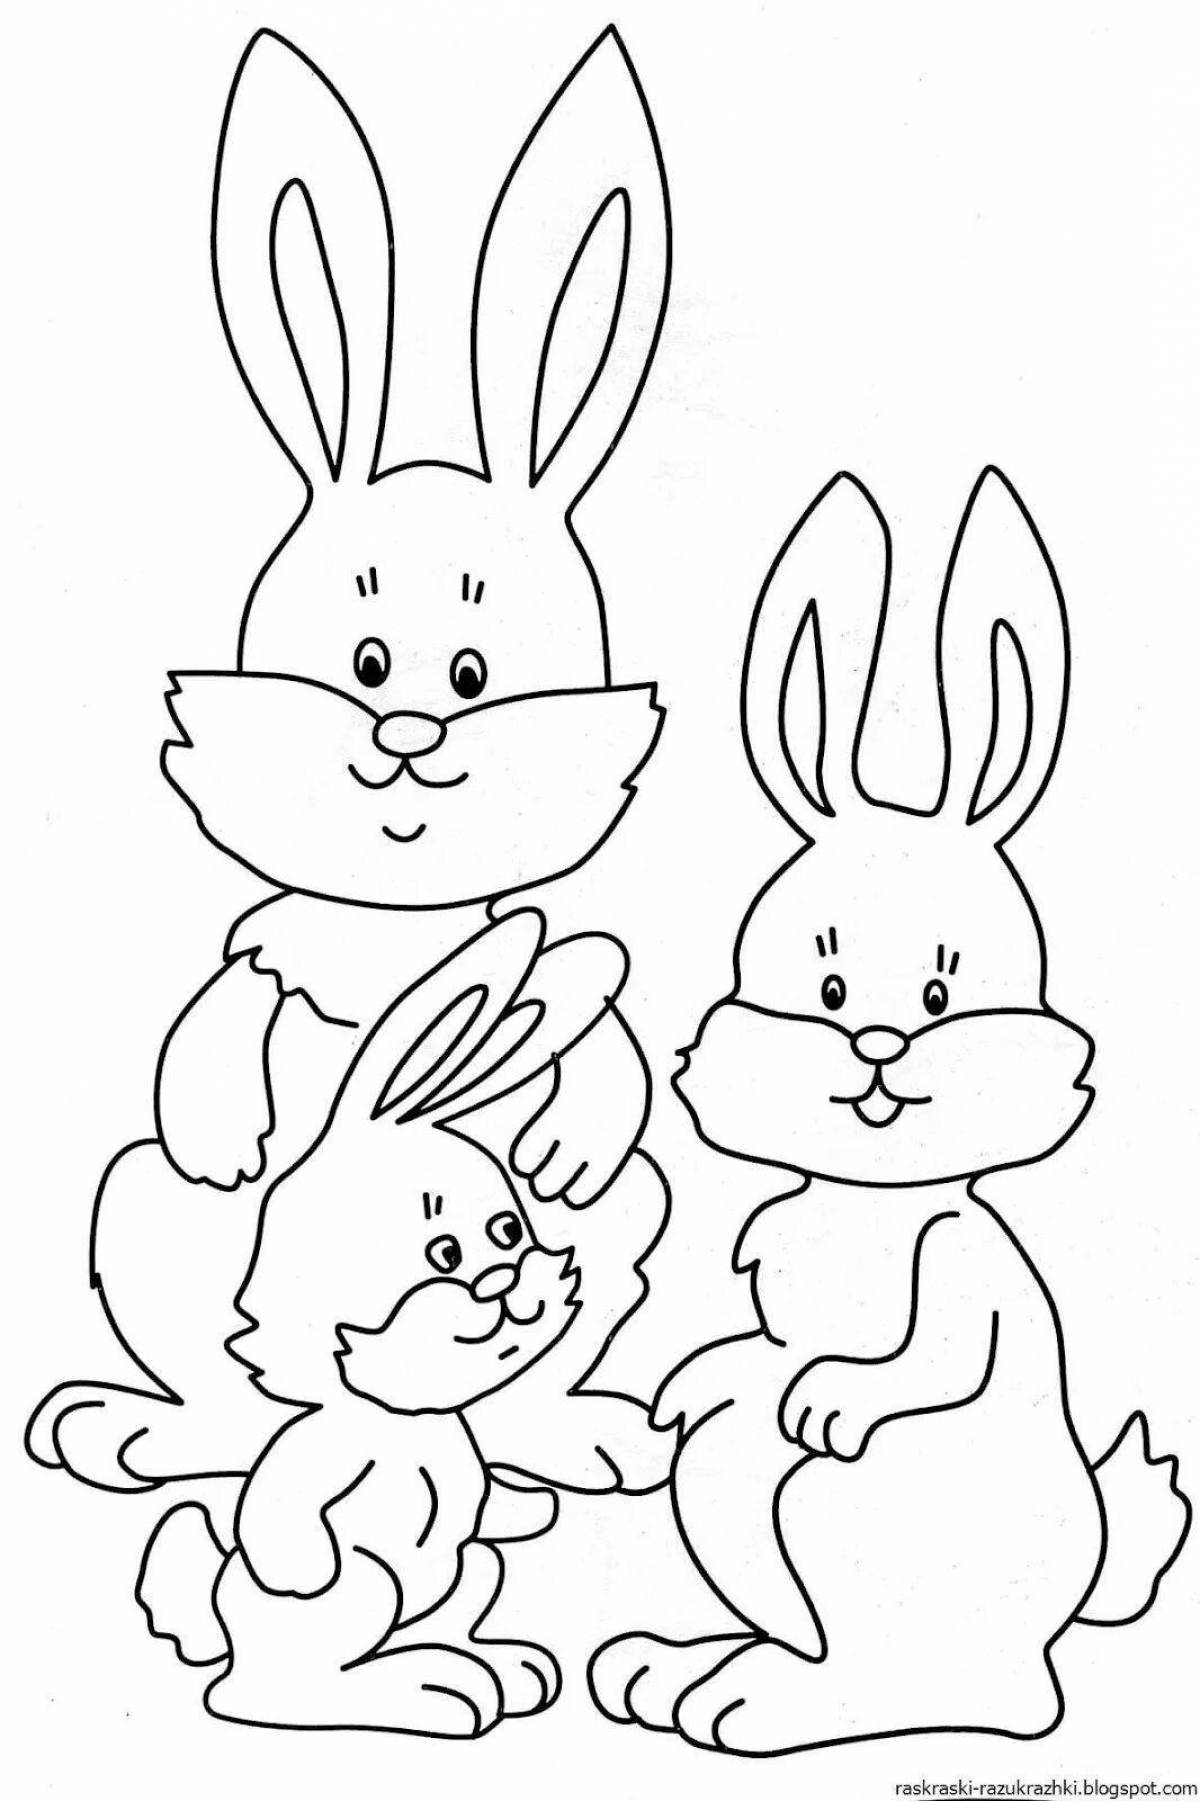 Раскраска яркий кролик для детей